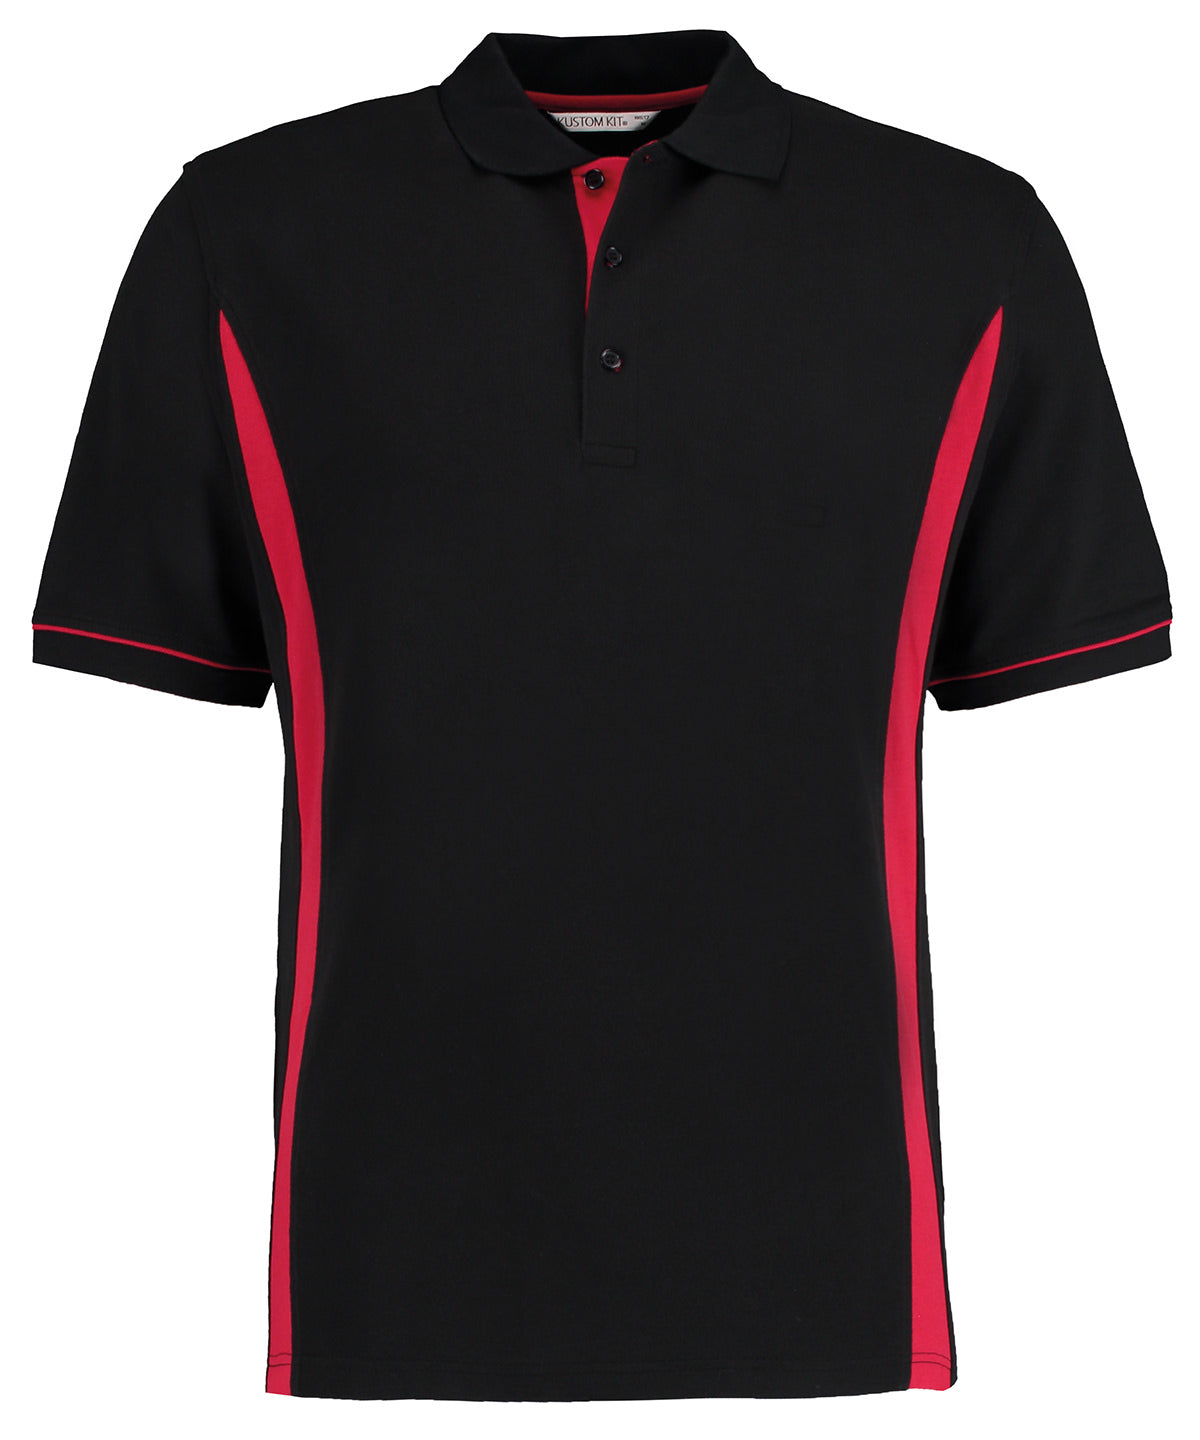 Personalised Polo Shirts - Black Kustom Kit Scottsdale polo (classic fit)